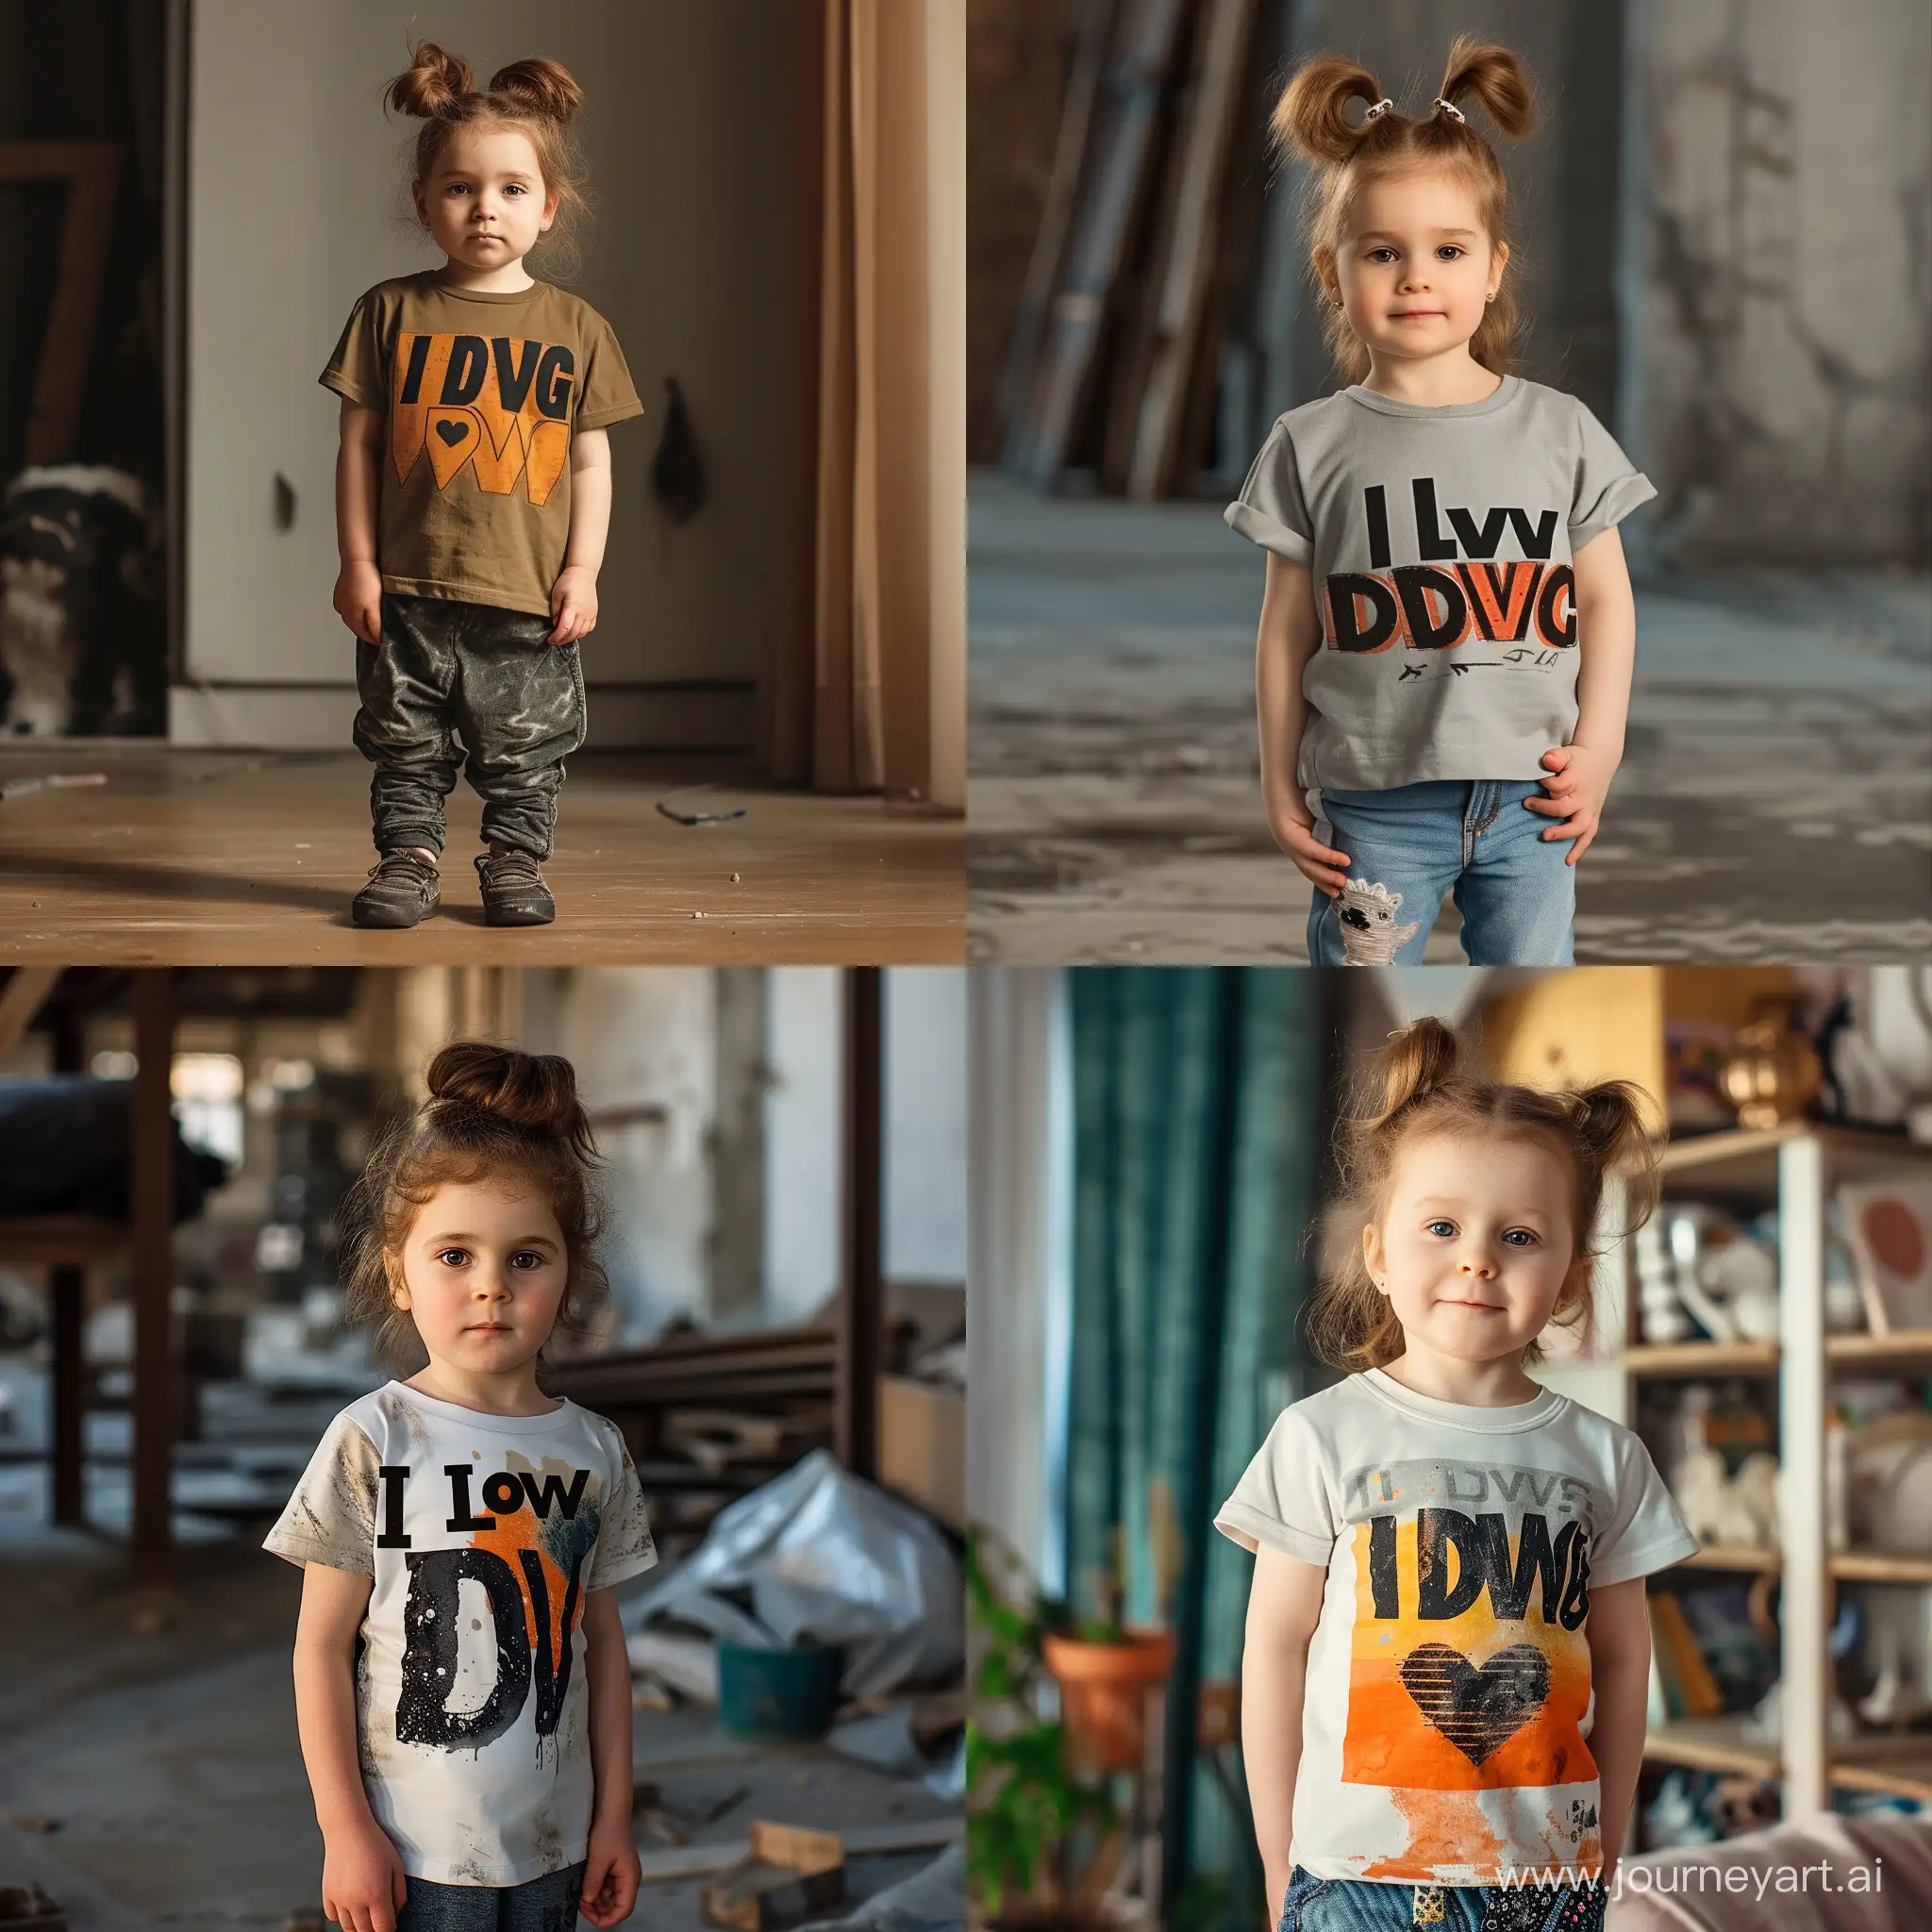 Маленькая девочка стоит в футболке. На футболке печатными крупными буквами написано "I love DVACH"
